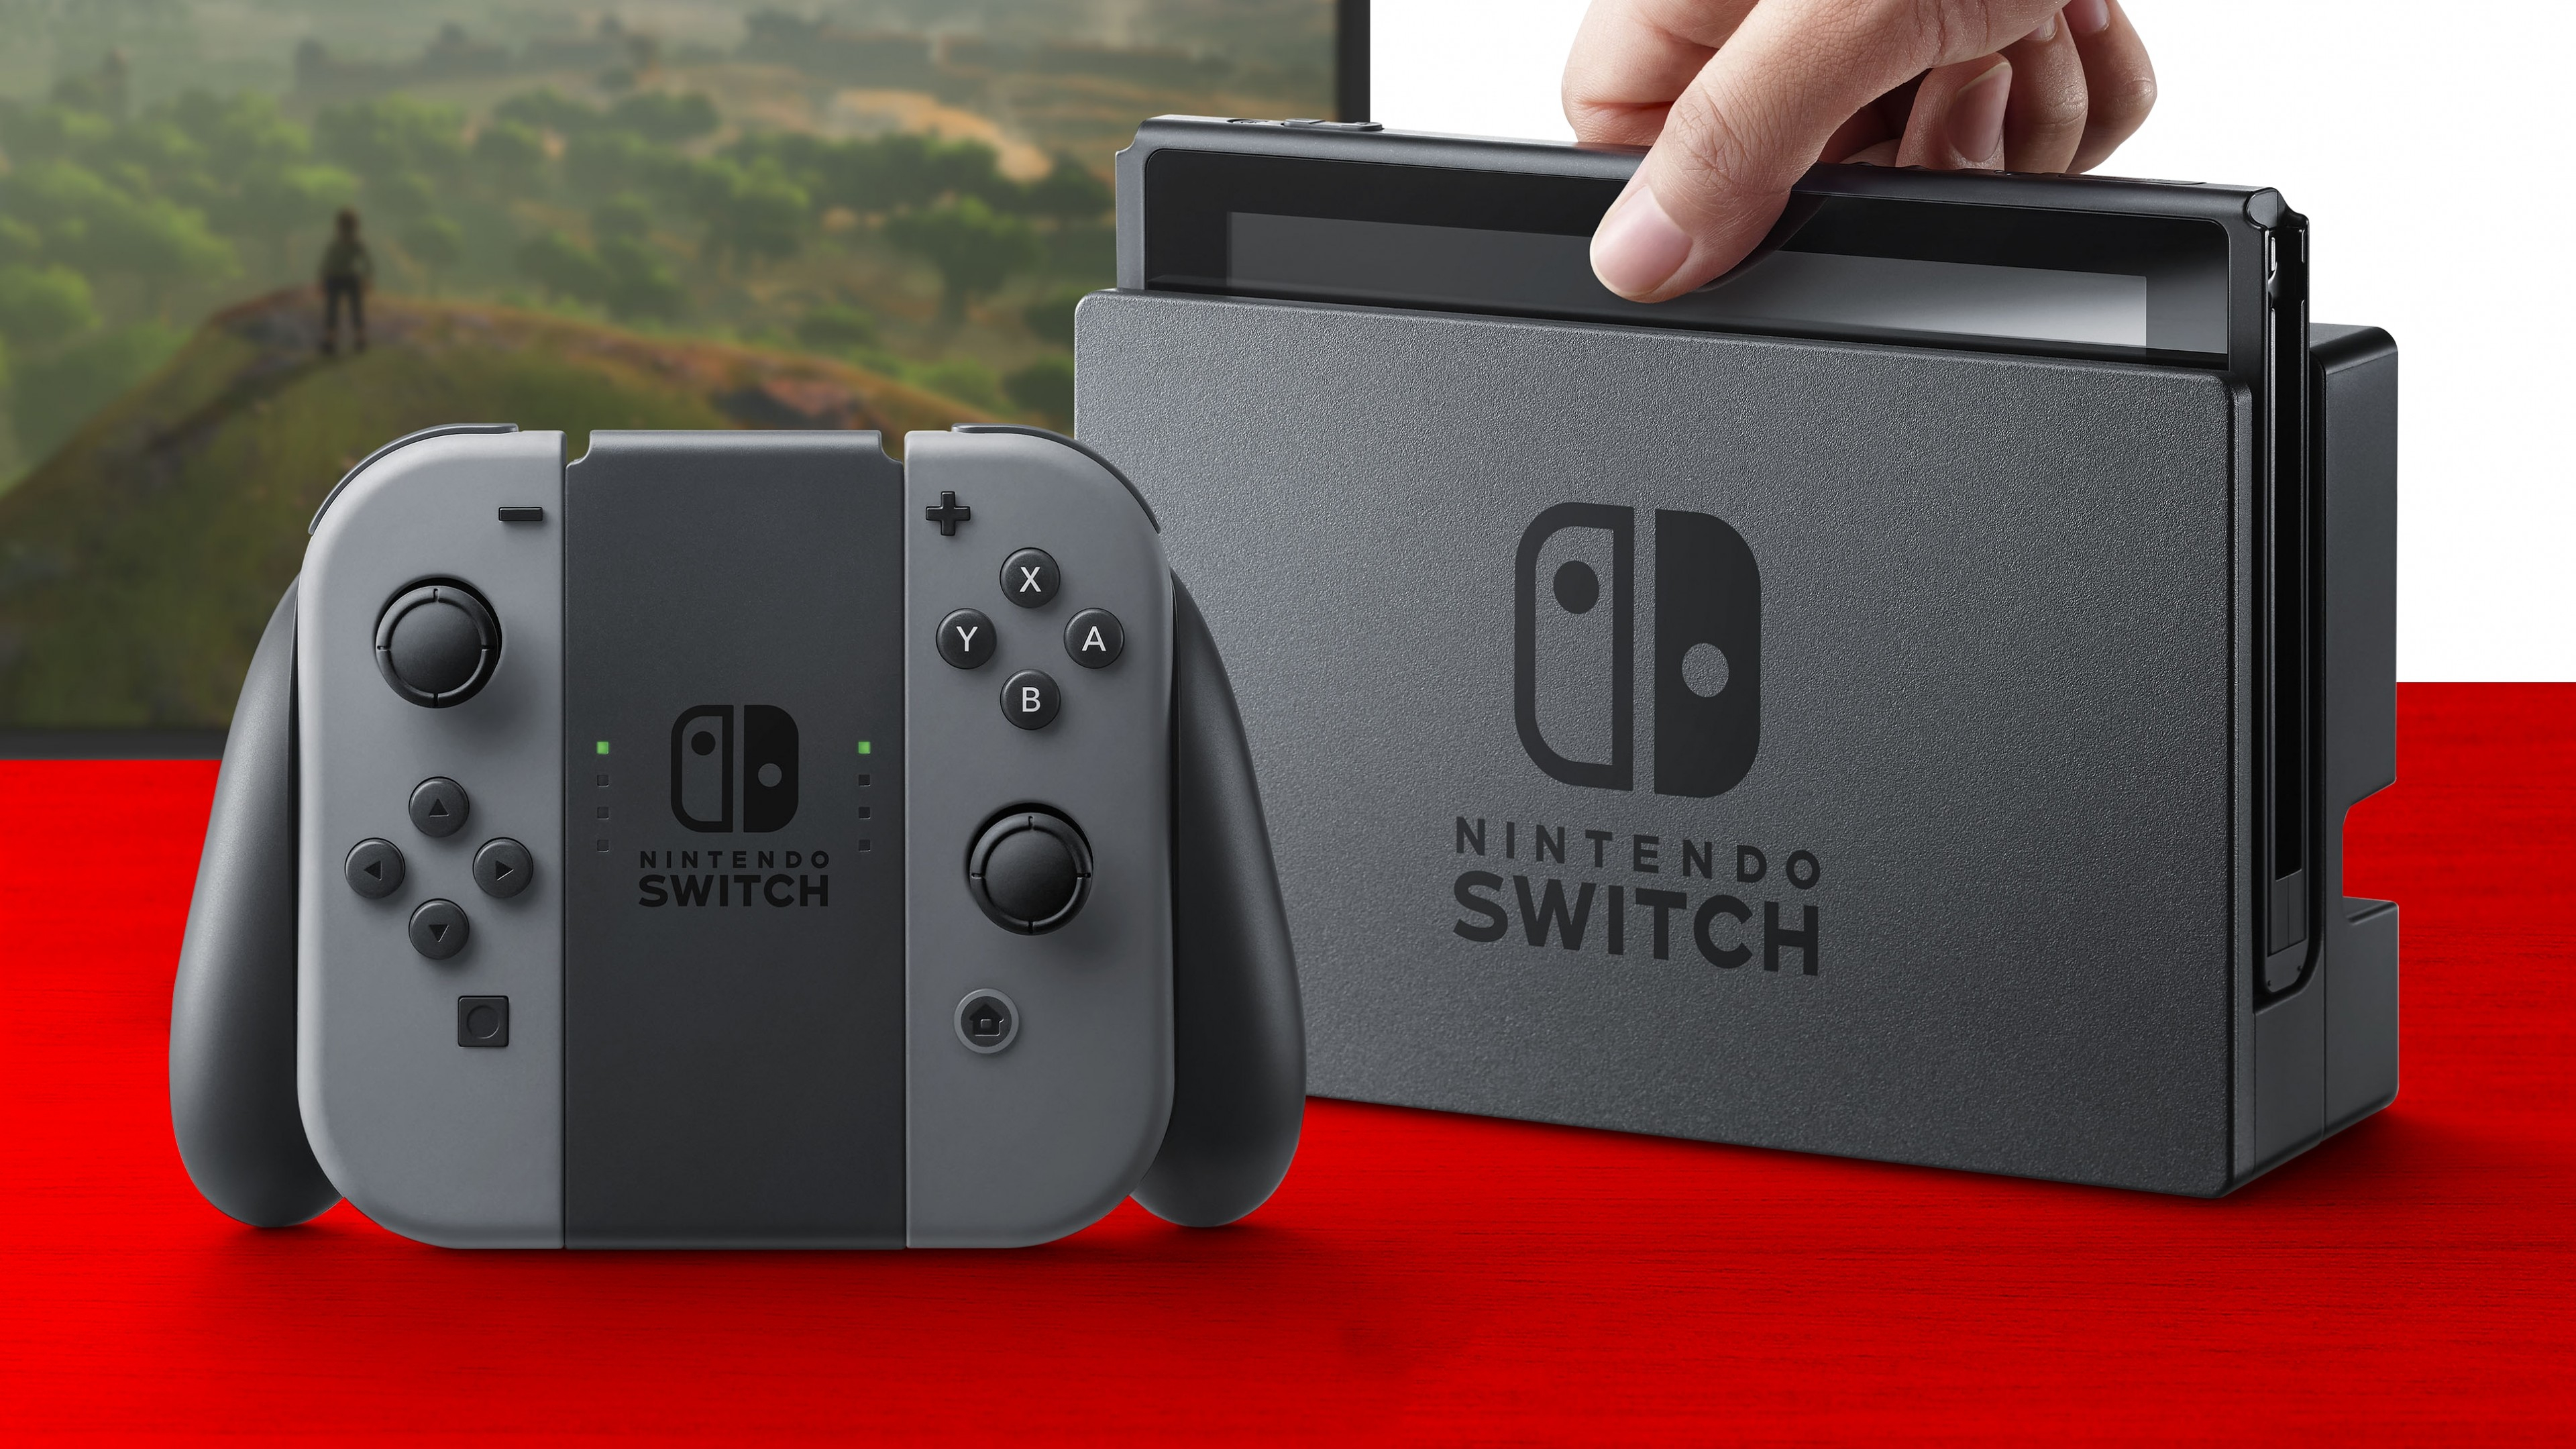 Nintendo switch последняя версия. Нинтендо свитч 2017. Nintendo Switch Rev 2. Игровая консоль Nintendo Switch. Нинтендо свитч Лайт.